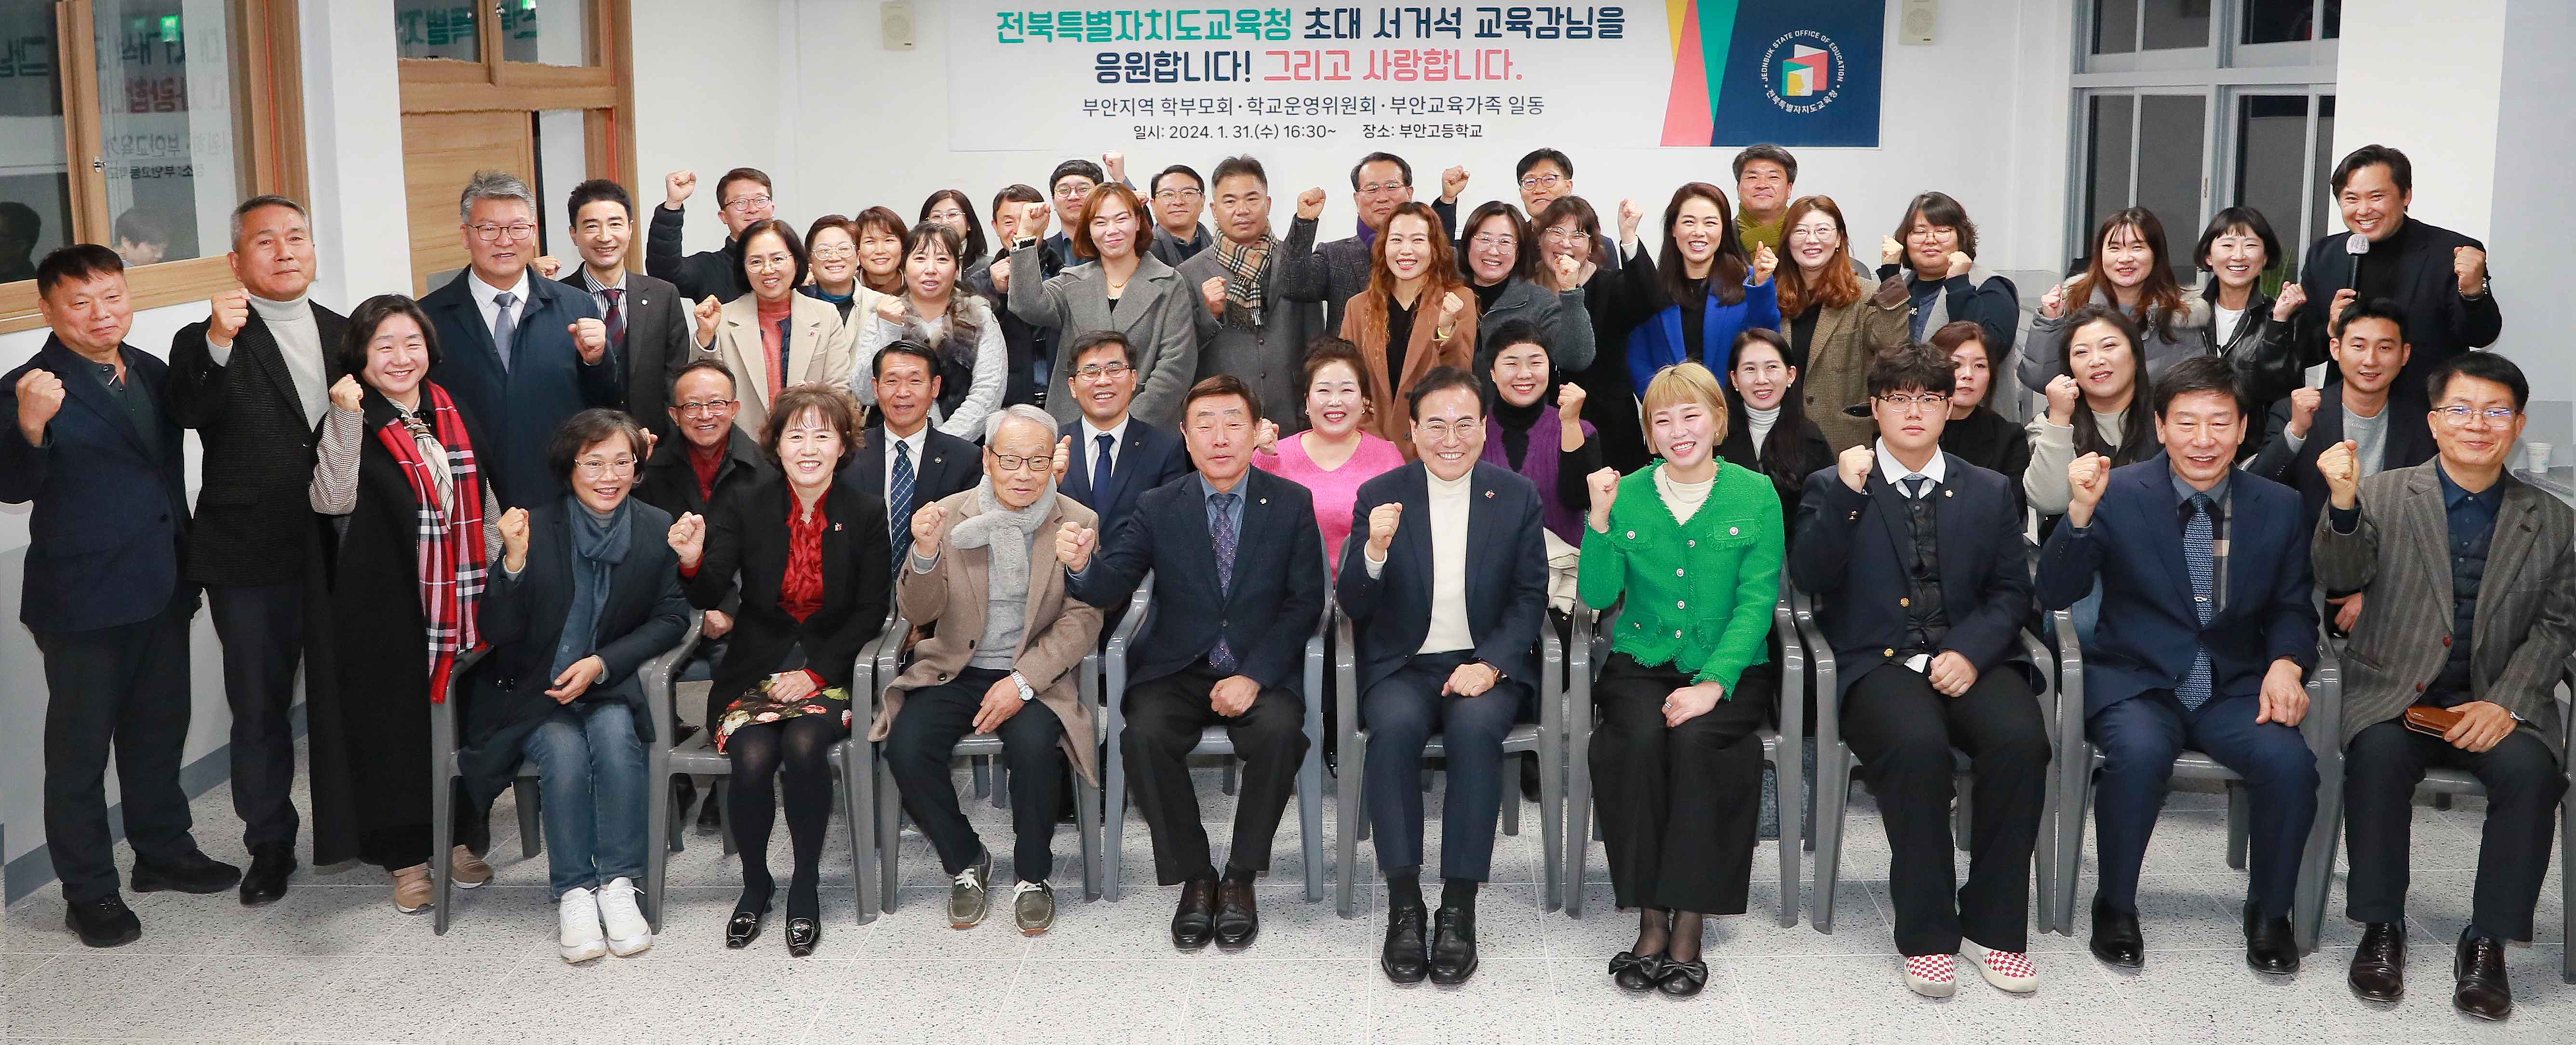 부안교육지원청 ‘지역과 함께하는 부안교육 간담회’개최